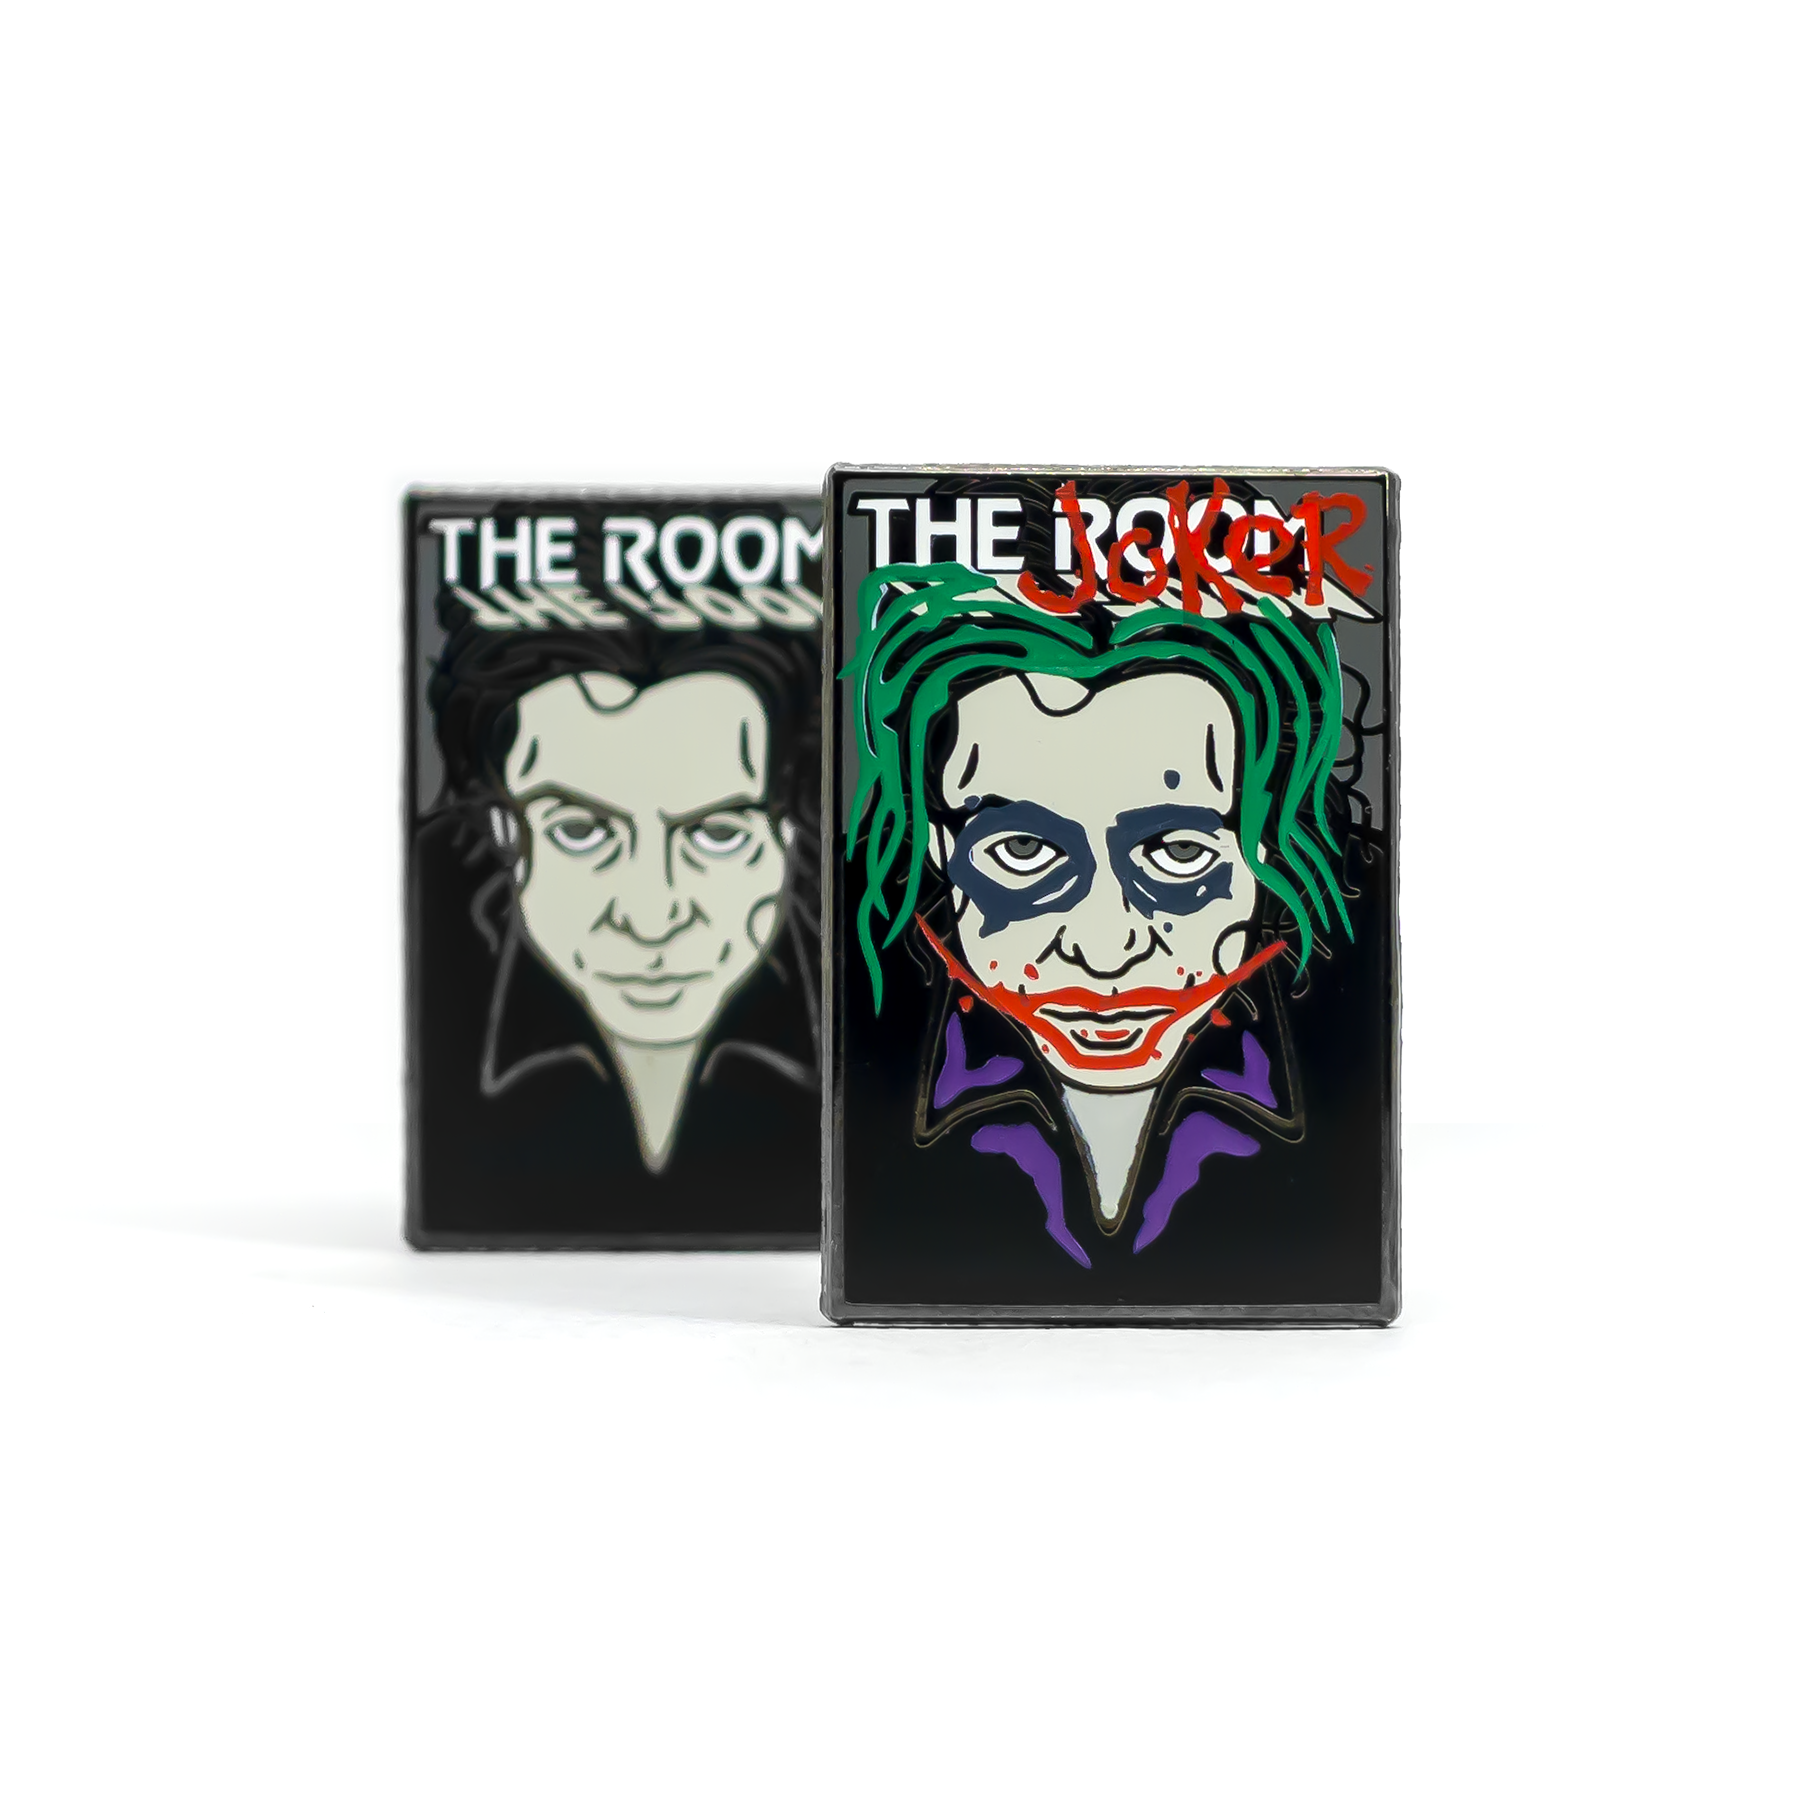 The Room (Joker Edition) enamel pin